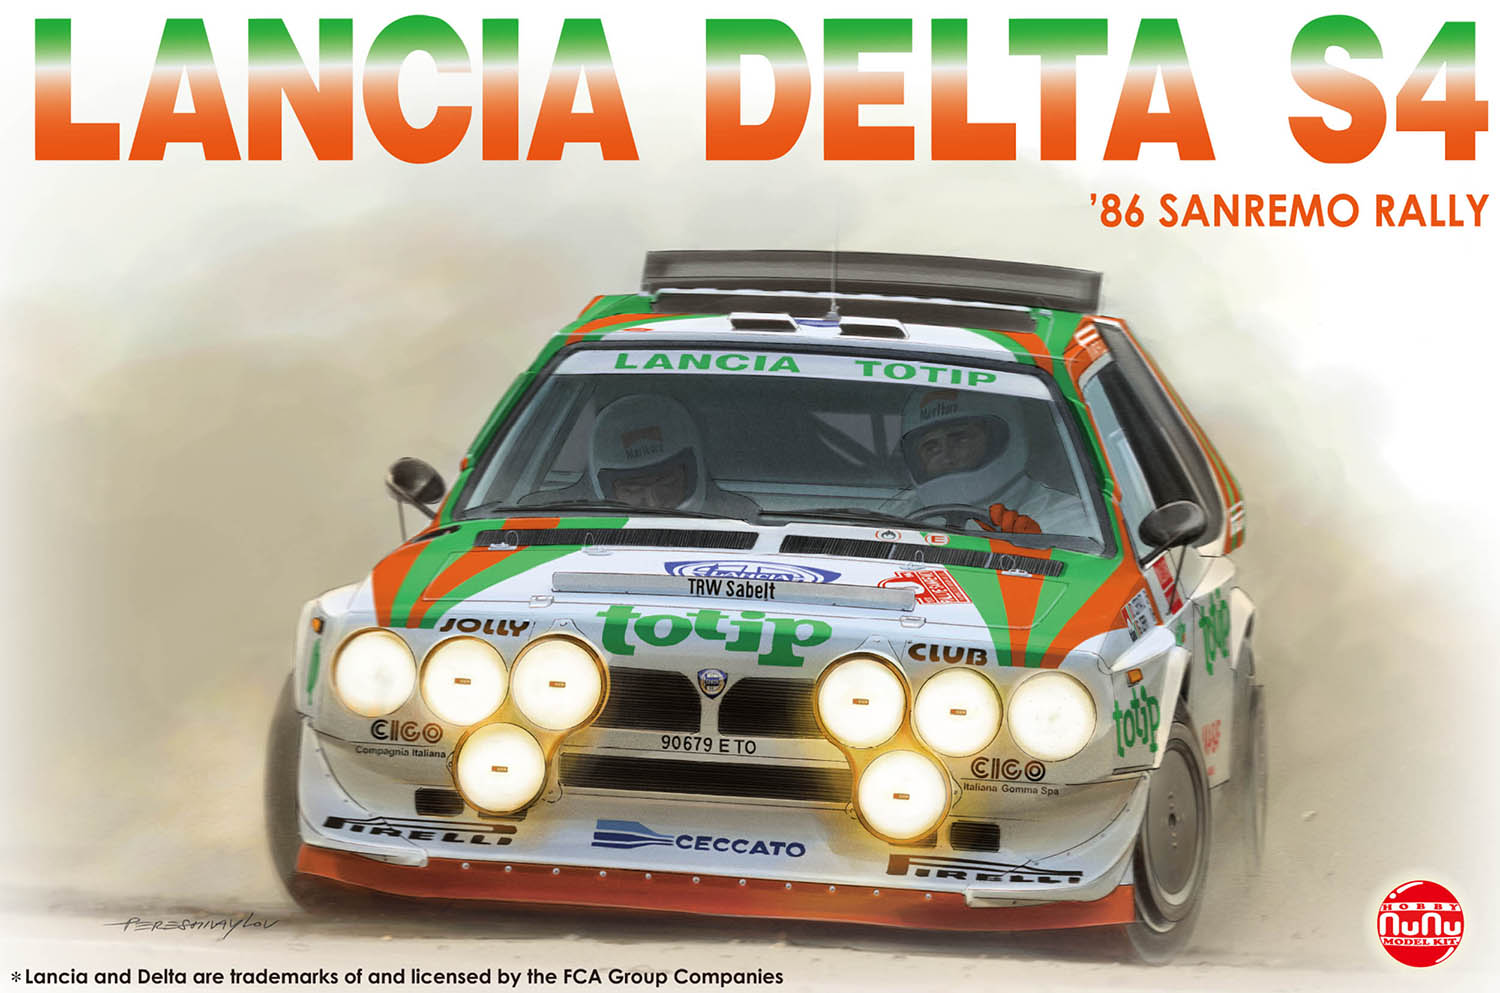 Lancia Delta S4 (Jolly Club Totip) Sanremo Rally 1986